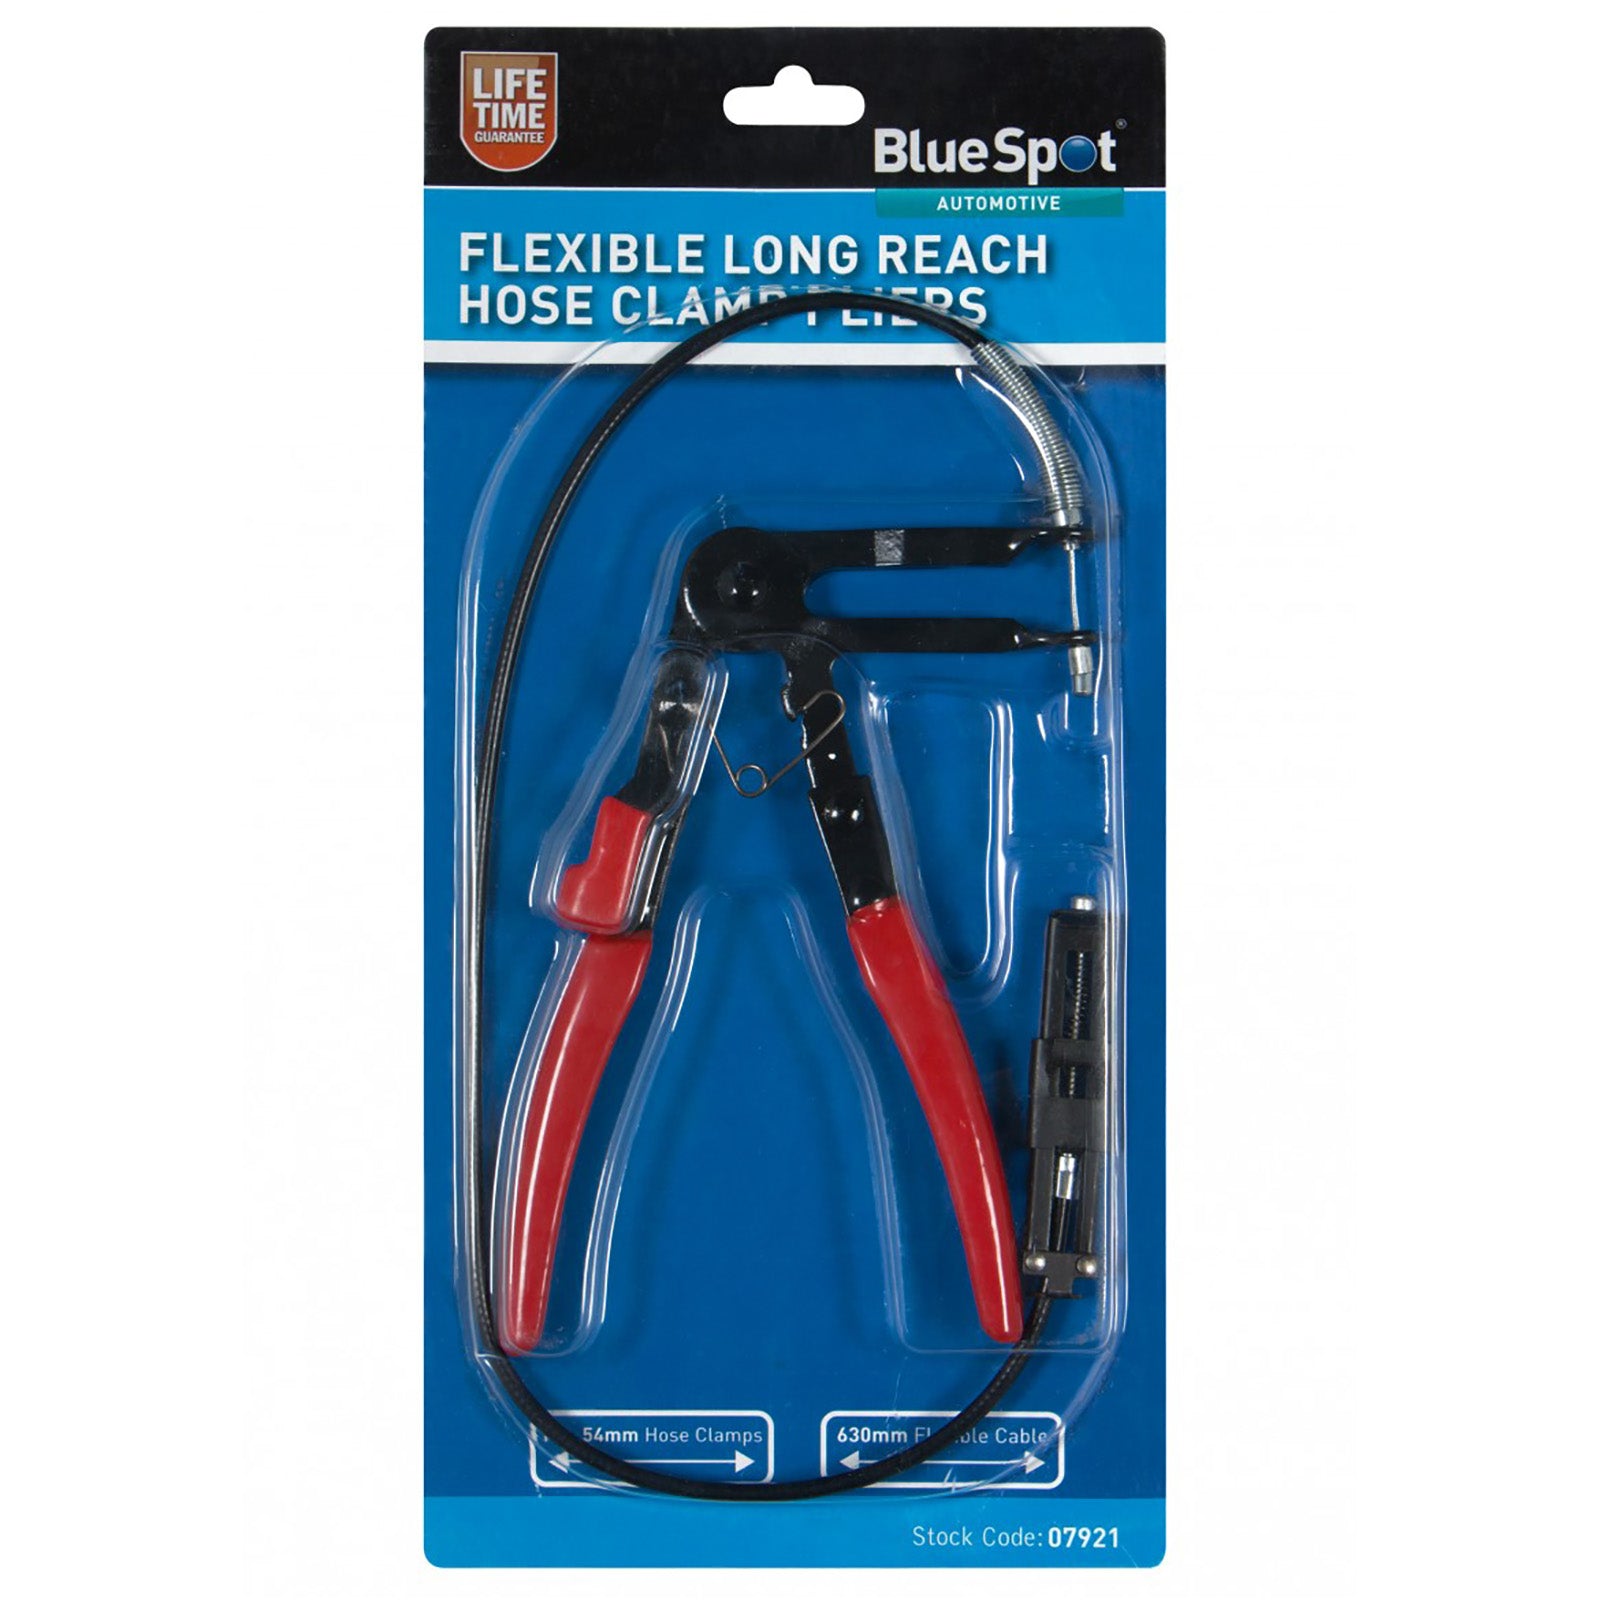 BlueSpot Flexible Long Reach Hose Clamp Pliers 18-54mm 630mm Flexible Cable